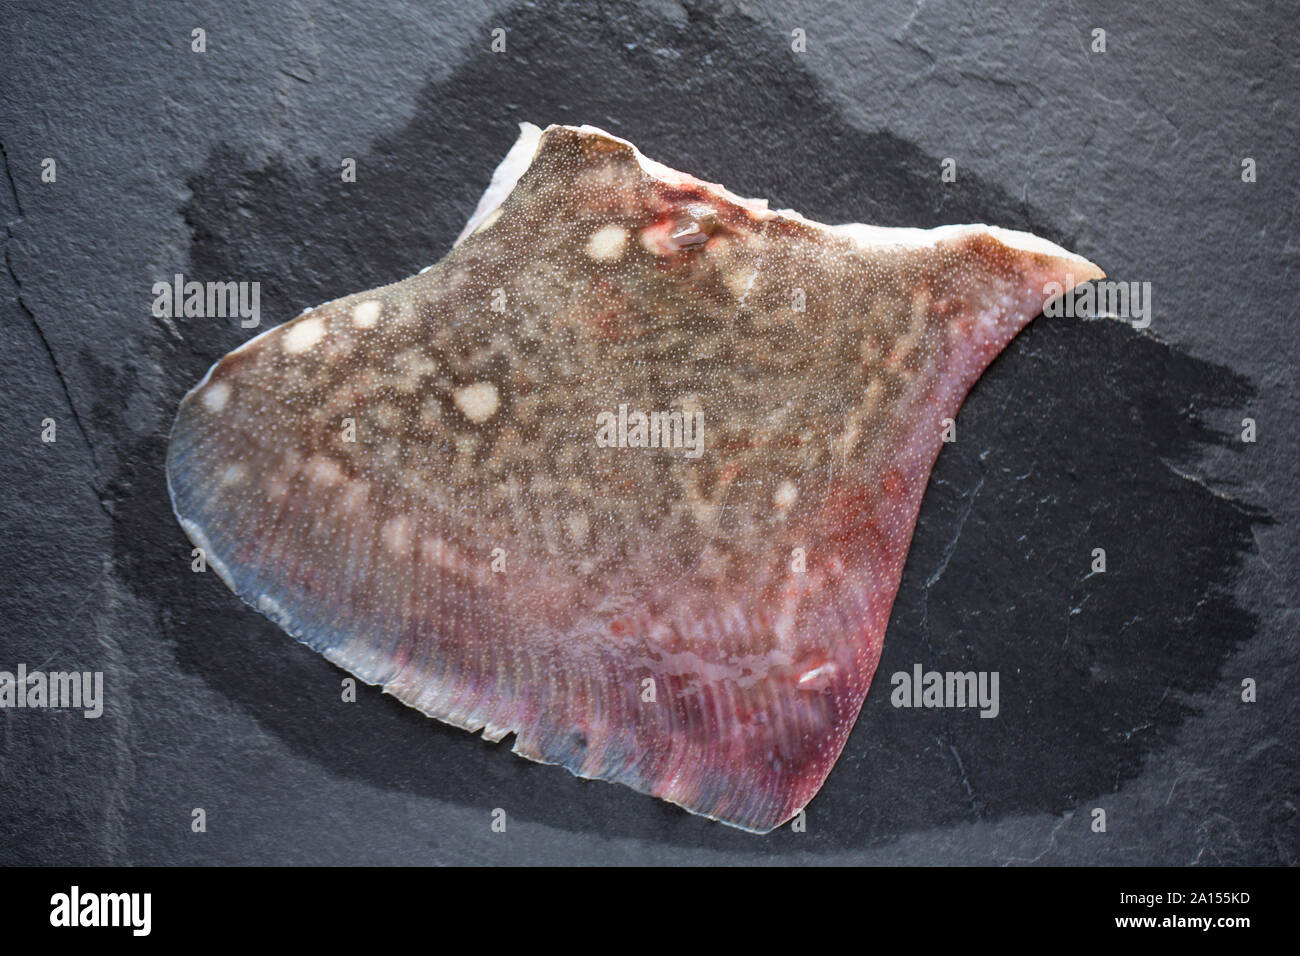 Une matière brute, non cuites et non dépouillés d'aile d'un Thornback ray ray, Raja clavata. Background Dark slate. Dorset England UK GB. Banque D'Images